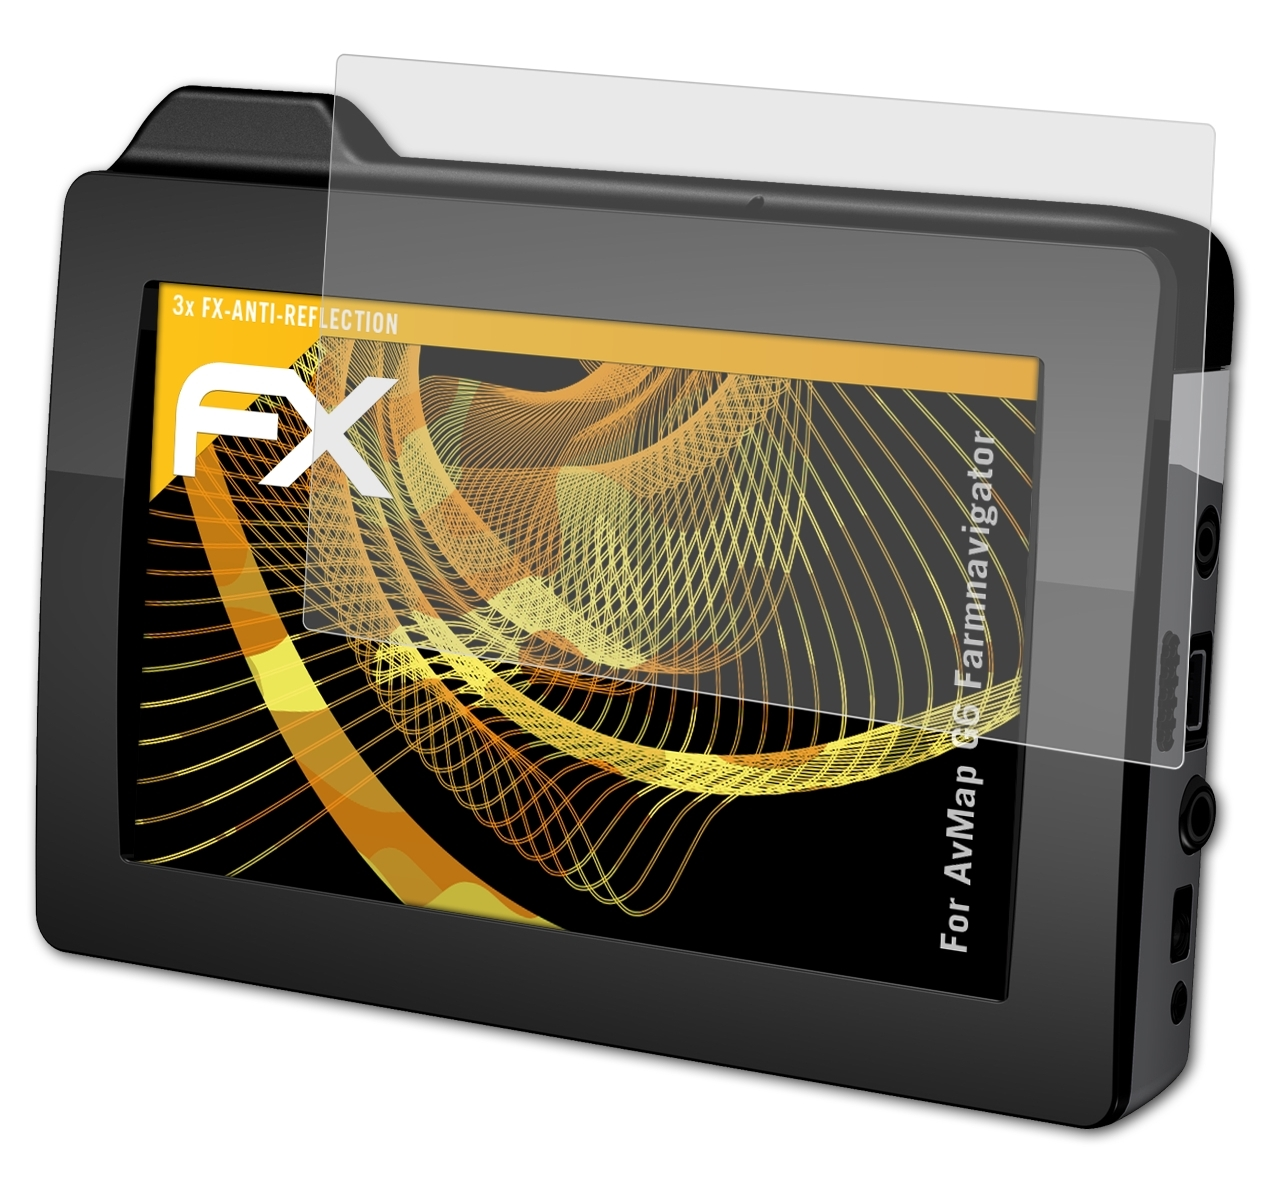 ATFOLIX 3x Displayschutz(für G6 FX-Antireflex AvMap Farmnavigator)